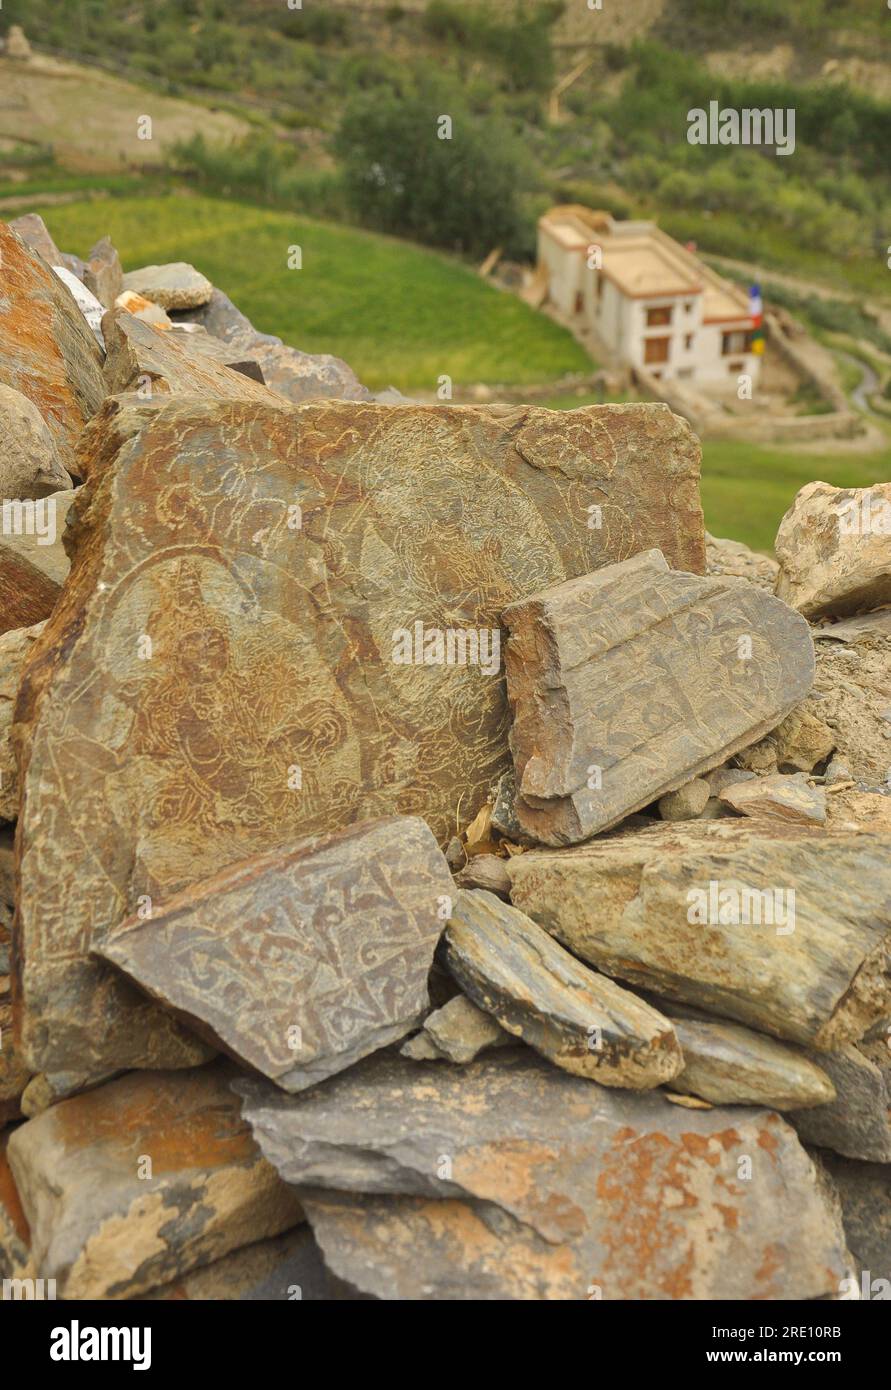 Mantra buddista e statua scolpita su pietre a Ladakh, INDIA Foto Stock